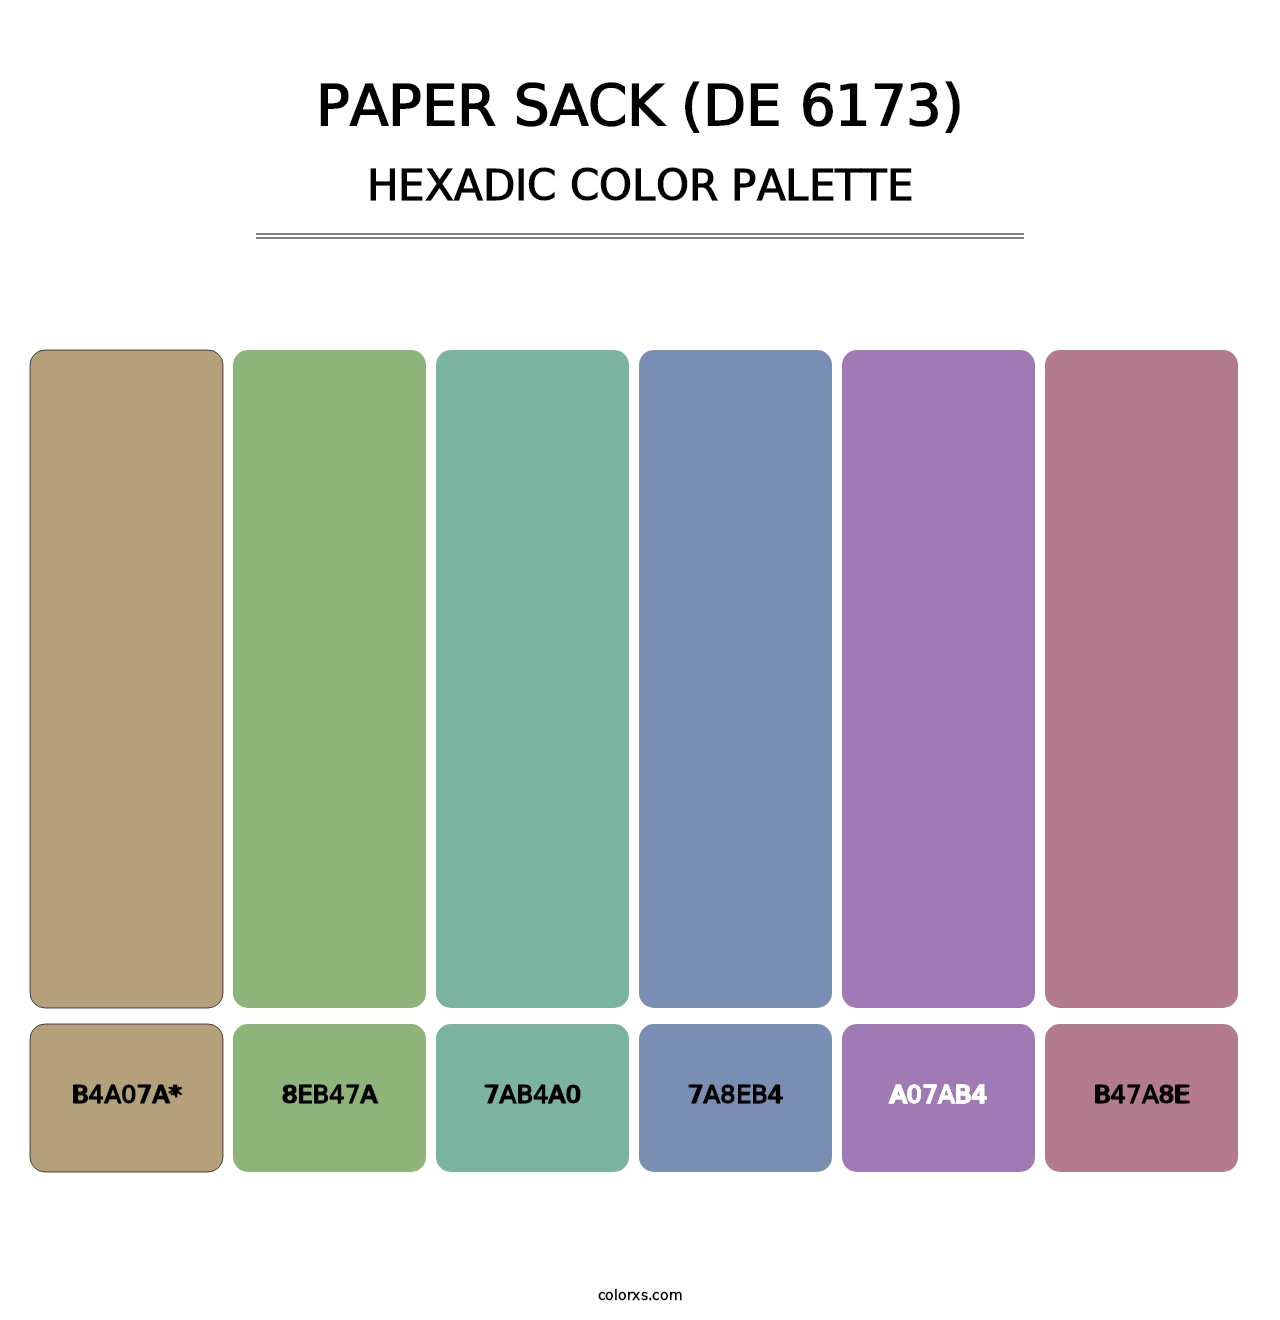 Paper Sack (DE 6173) - Hexadic Color Palette